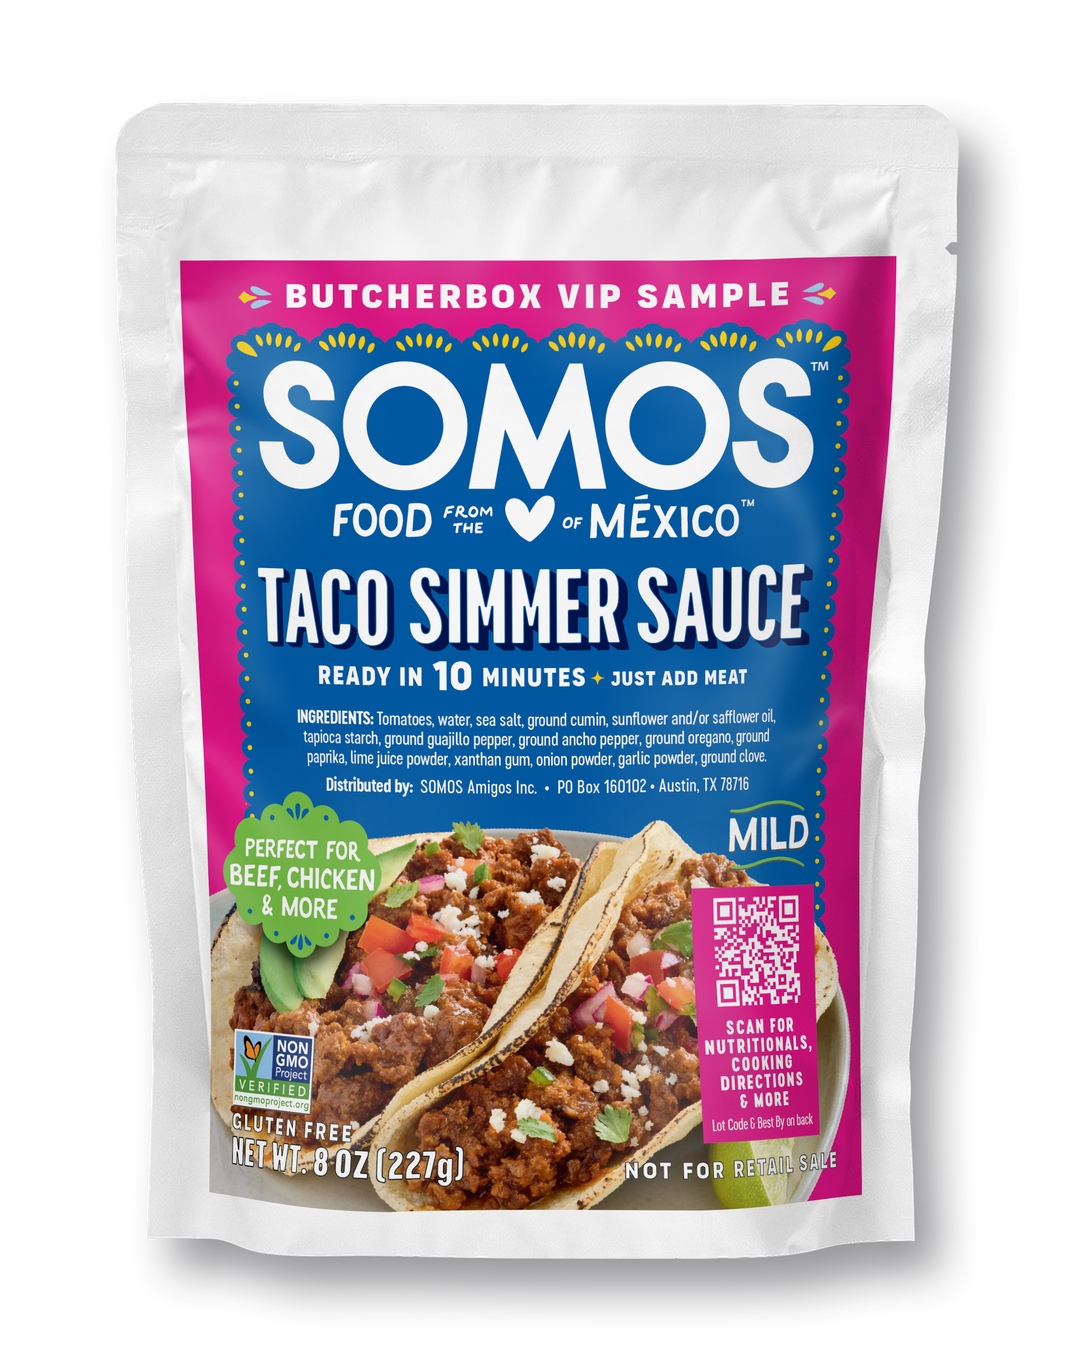 SOMOS Taco Simmer Sauce (Butcherbox Promo)